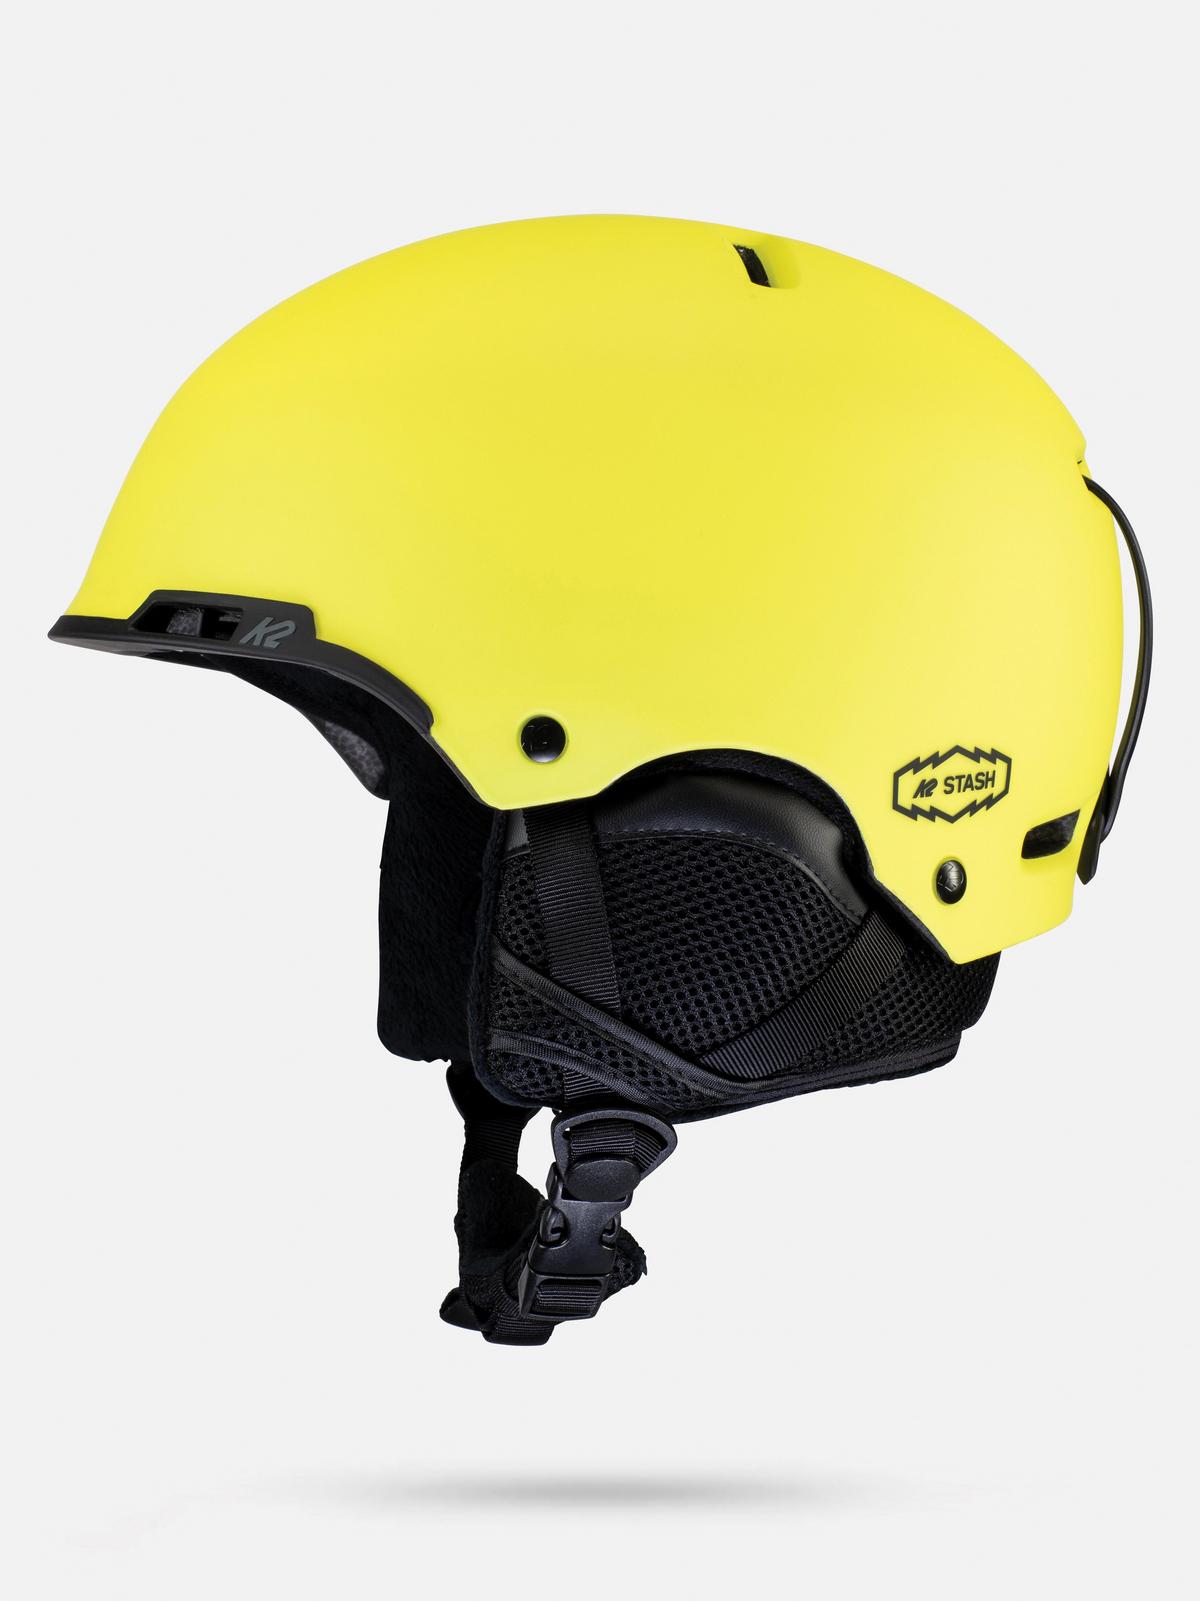 K2 Stash Men's Helmet 2022 | K2 Skis and K2 Snowboarding